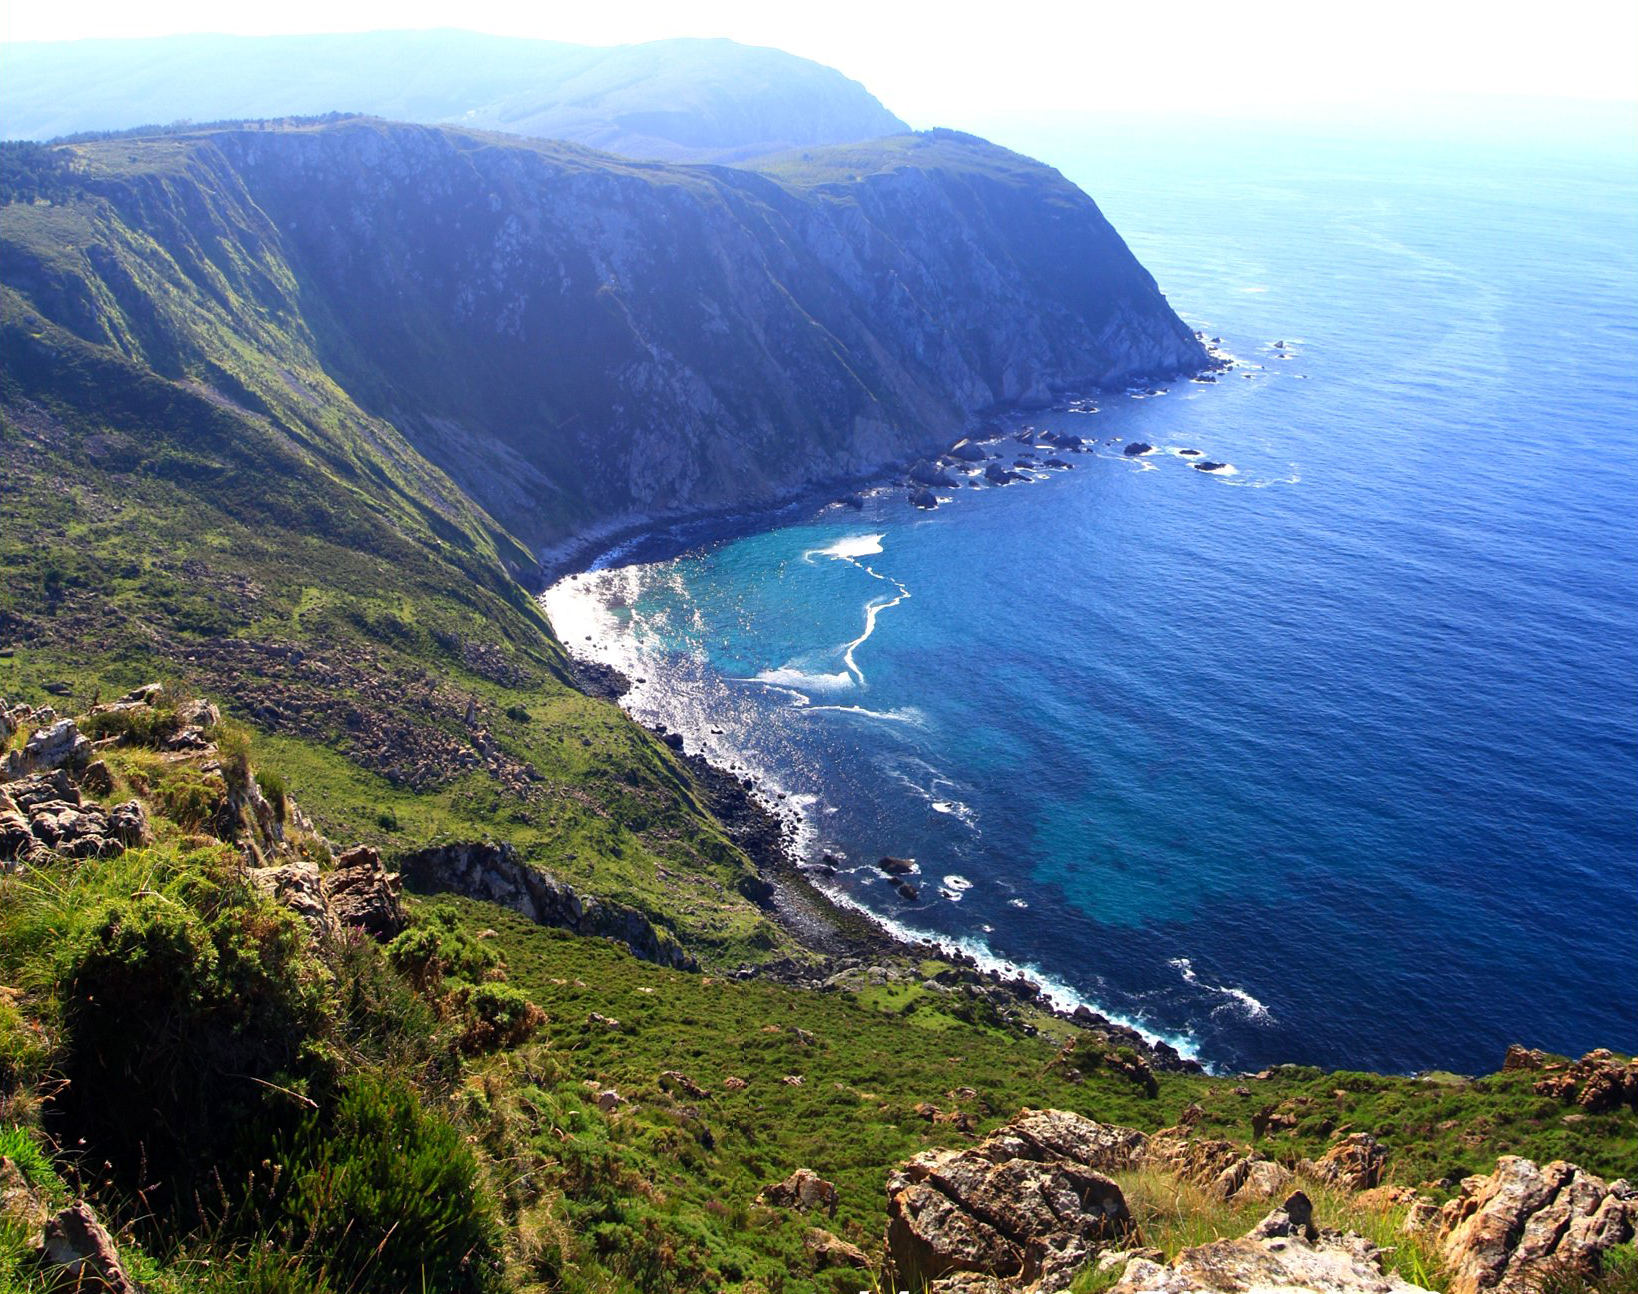 4. Vixía Herbeira Cliffs, Spain